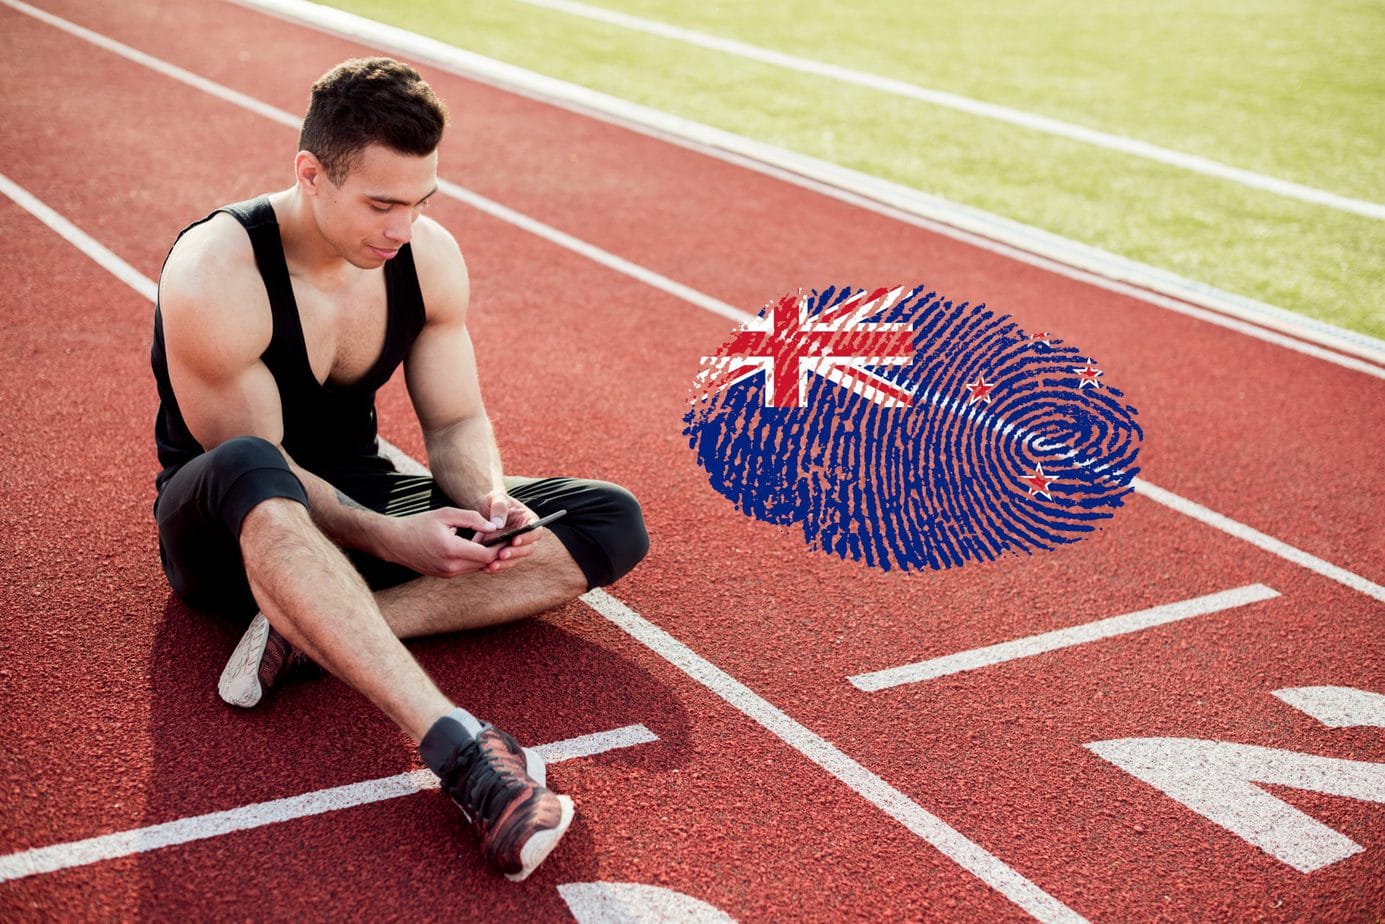 Nowoczesna technologia odpowiedzią na brak kibiców. Nowa Zelandia z wirtualnym dopingiem na IO w Tokio!